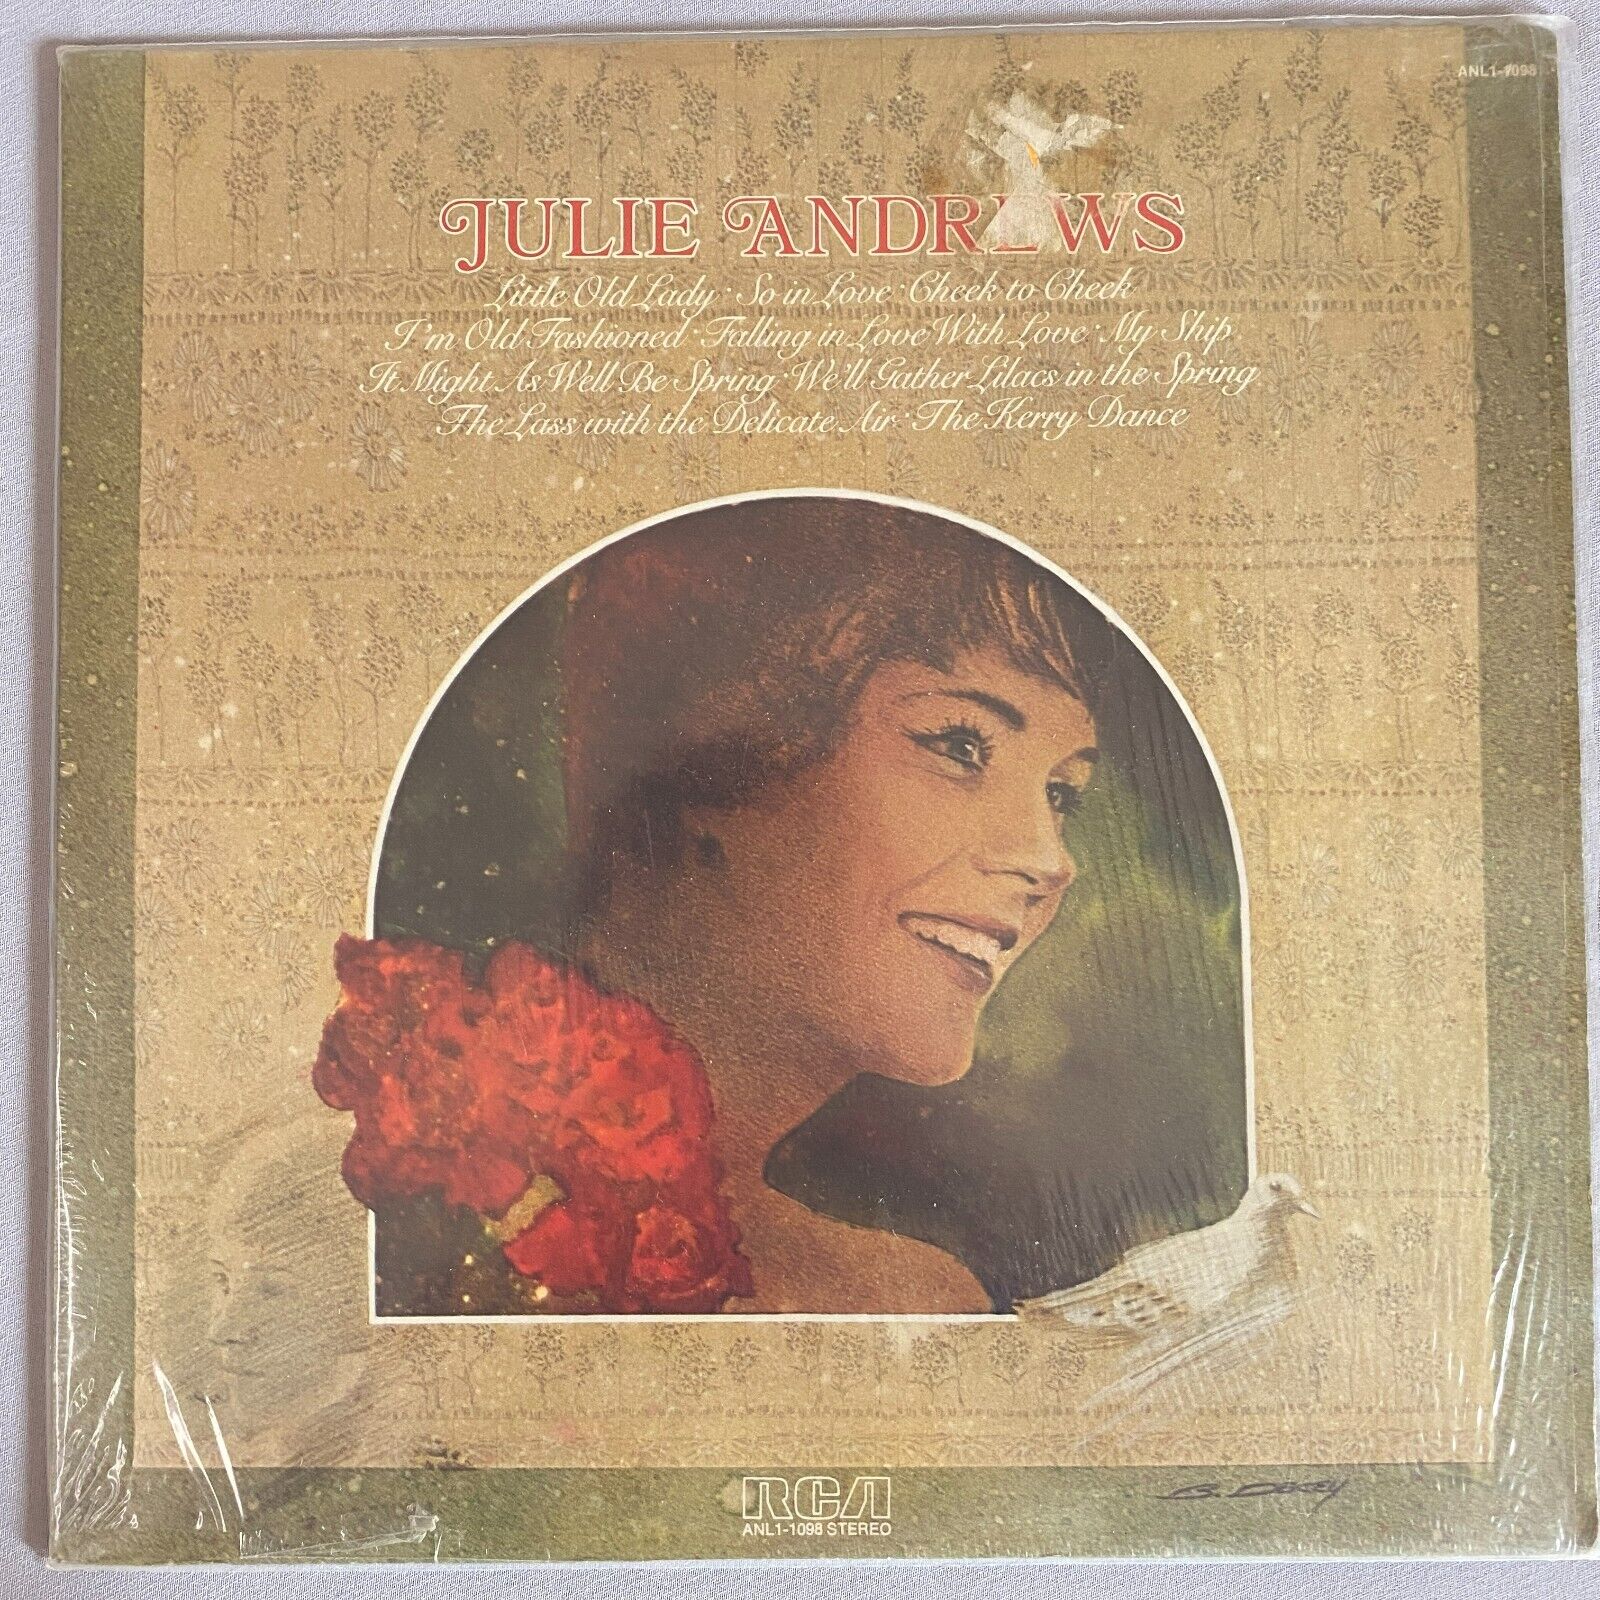 VINTAGE NEW Julie Andrews Compilation RCA Vinyl Album LP 1975 Old Stock USA MADE